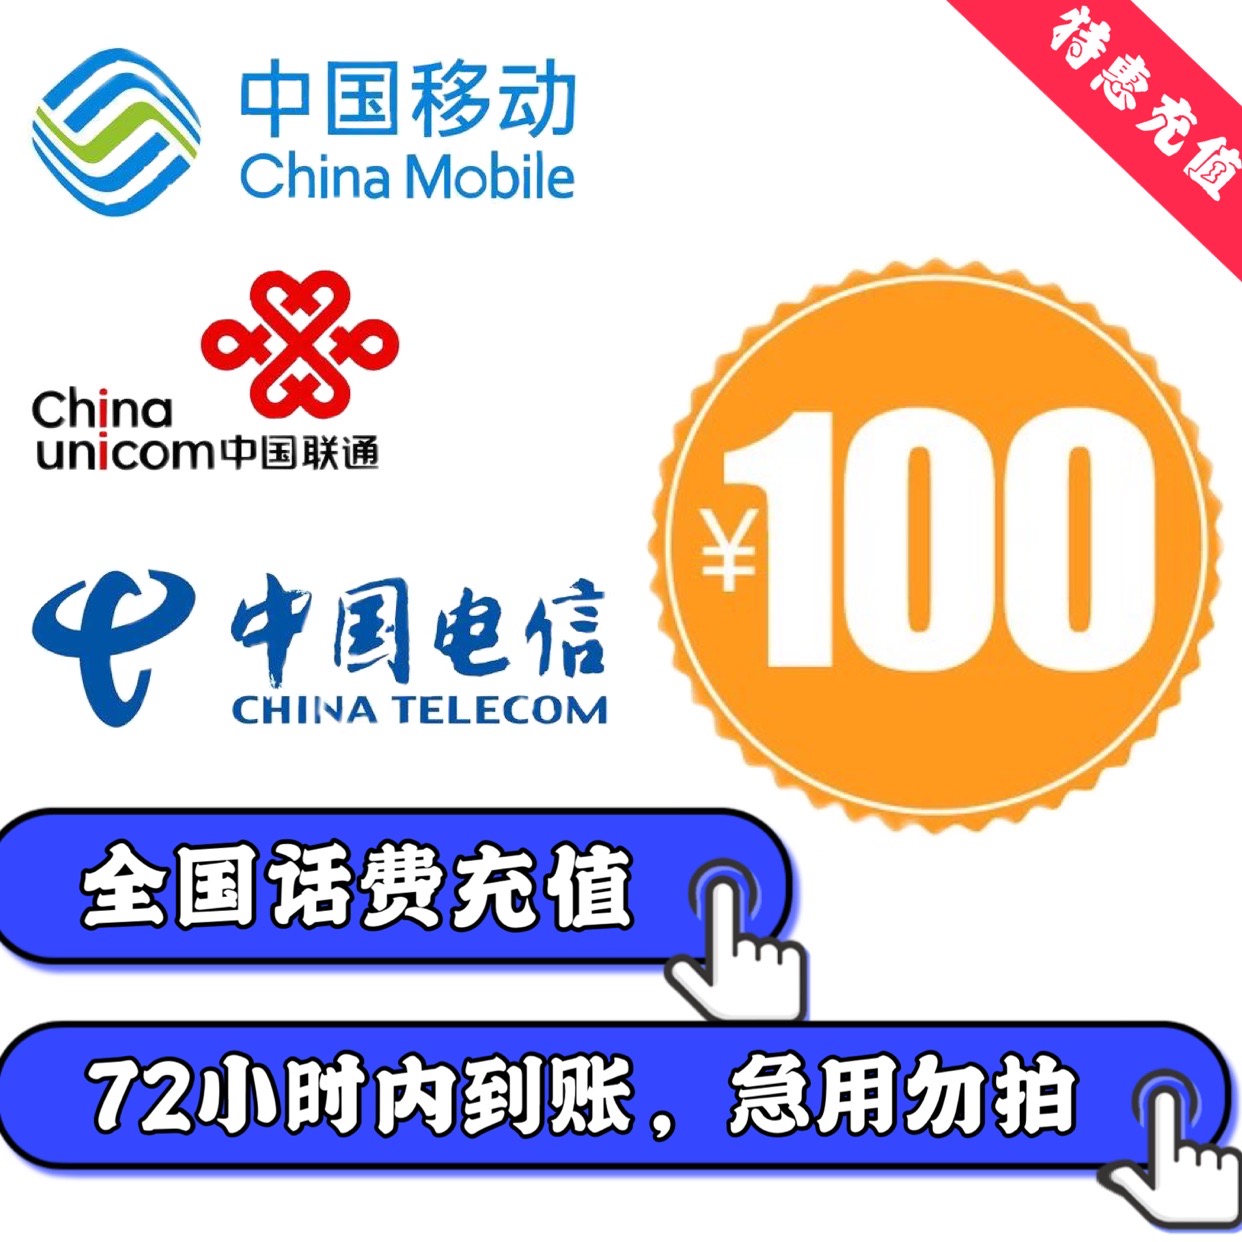 中国移动移动充值业务宣传单图片下载 - 觅知网